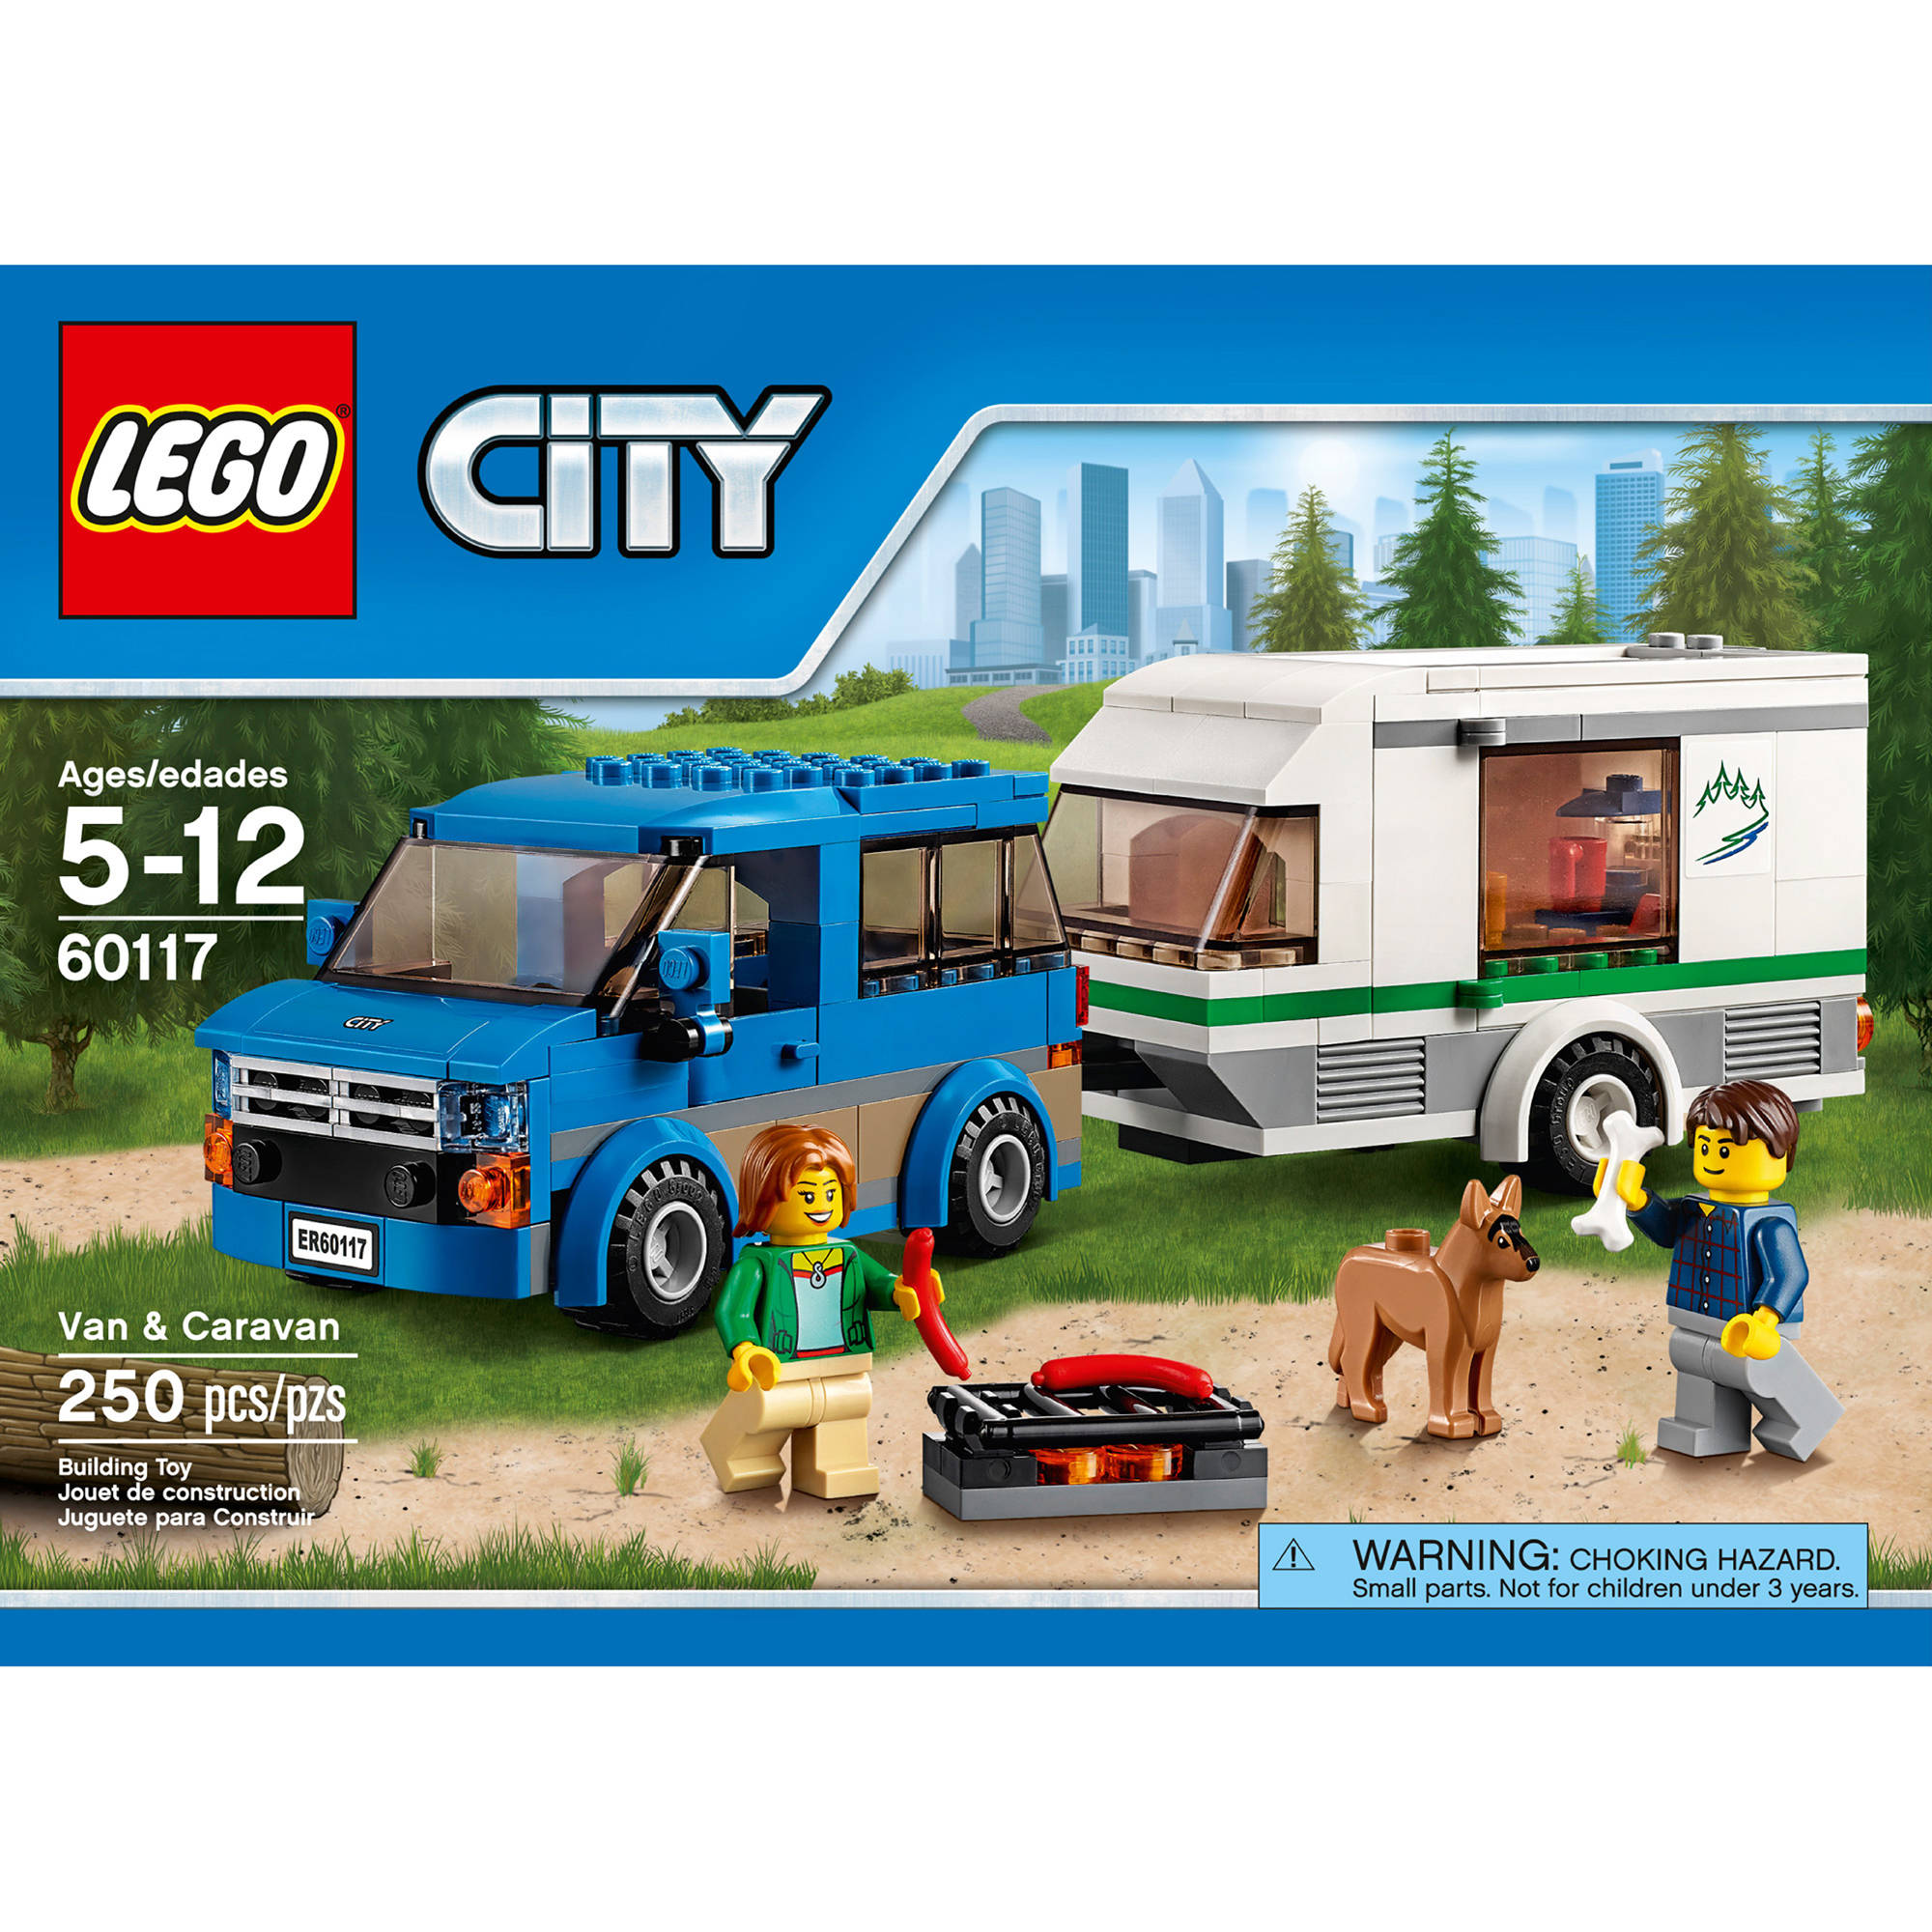 LEGO City Great Vehicles Van & Caravan 60117 - image 1 of 5